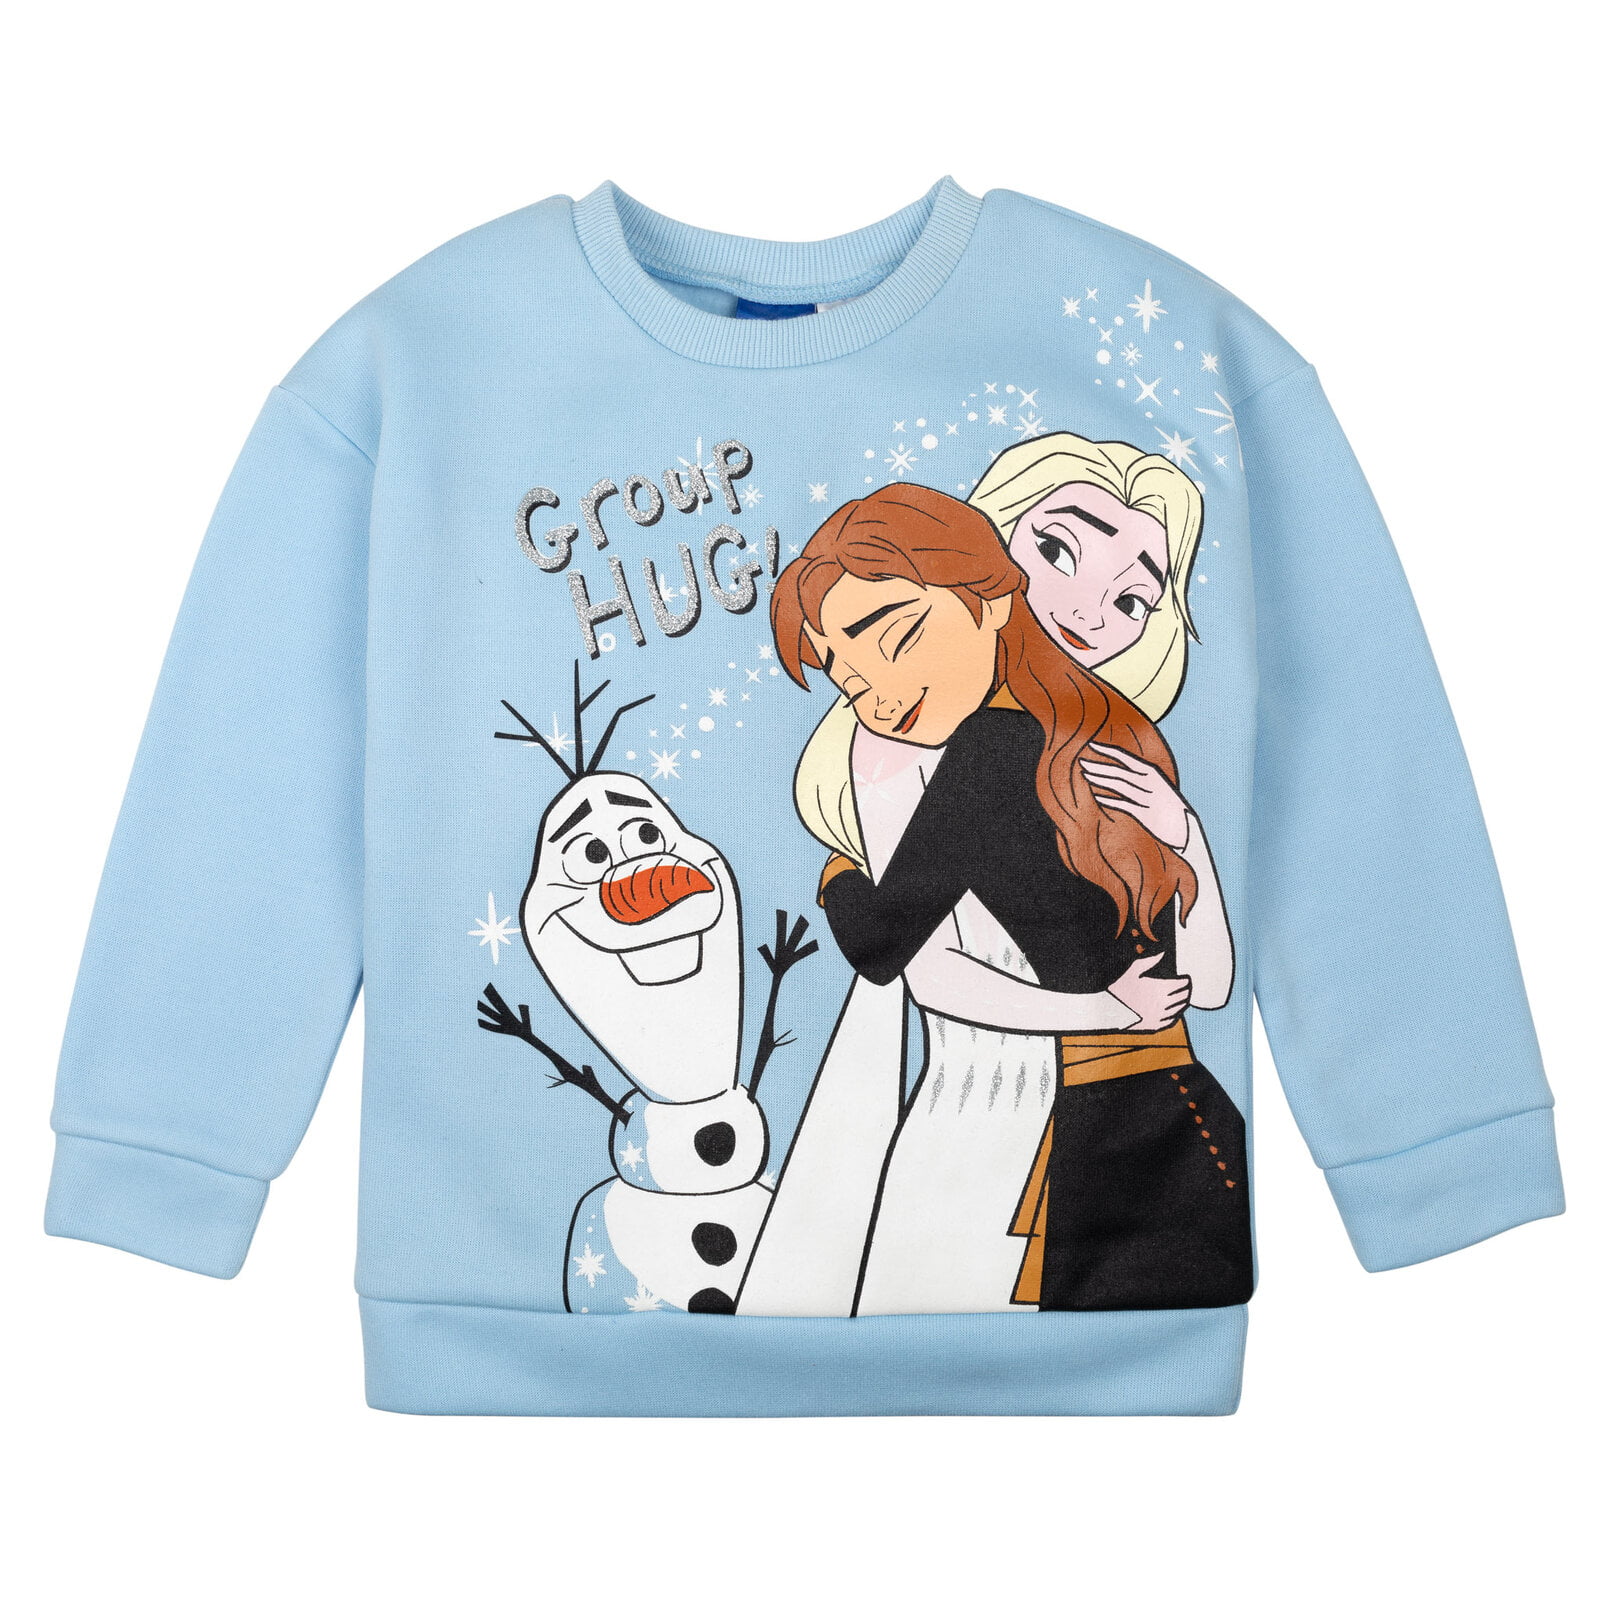 T-Shirt Set Elsa Blue Frozen Leggings Long Peplum Disney 8 Girls Big Sleeve Fleece